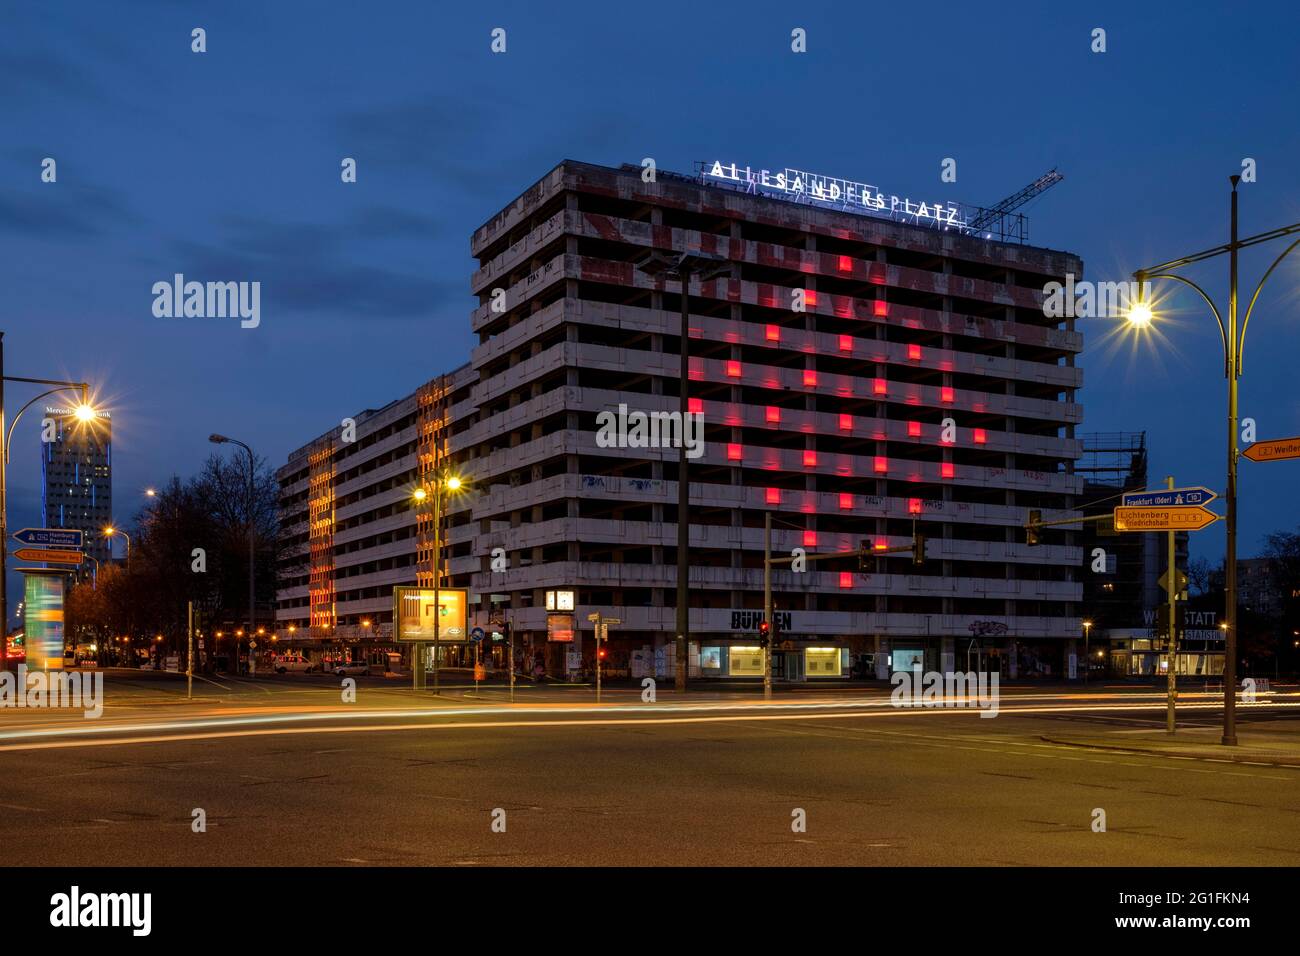 Maison de statistique à Alexanderplatz avec éclairage coloré, projet Allesandersplatz, crépuscule, heure bleue, Berlin-Mitte, Berlin, Allemagne Banque D'Images